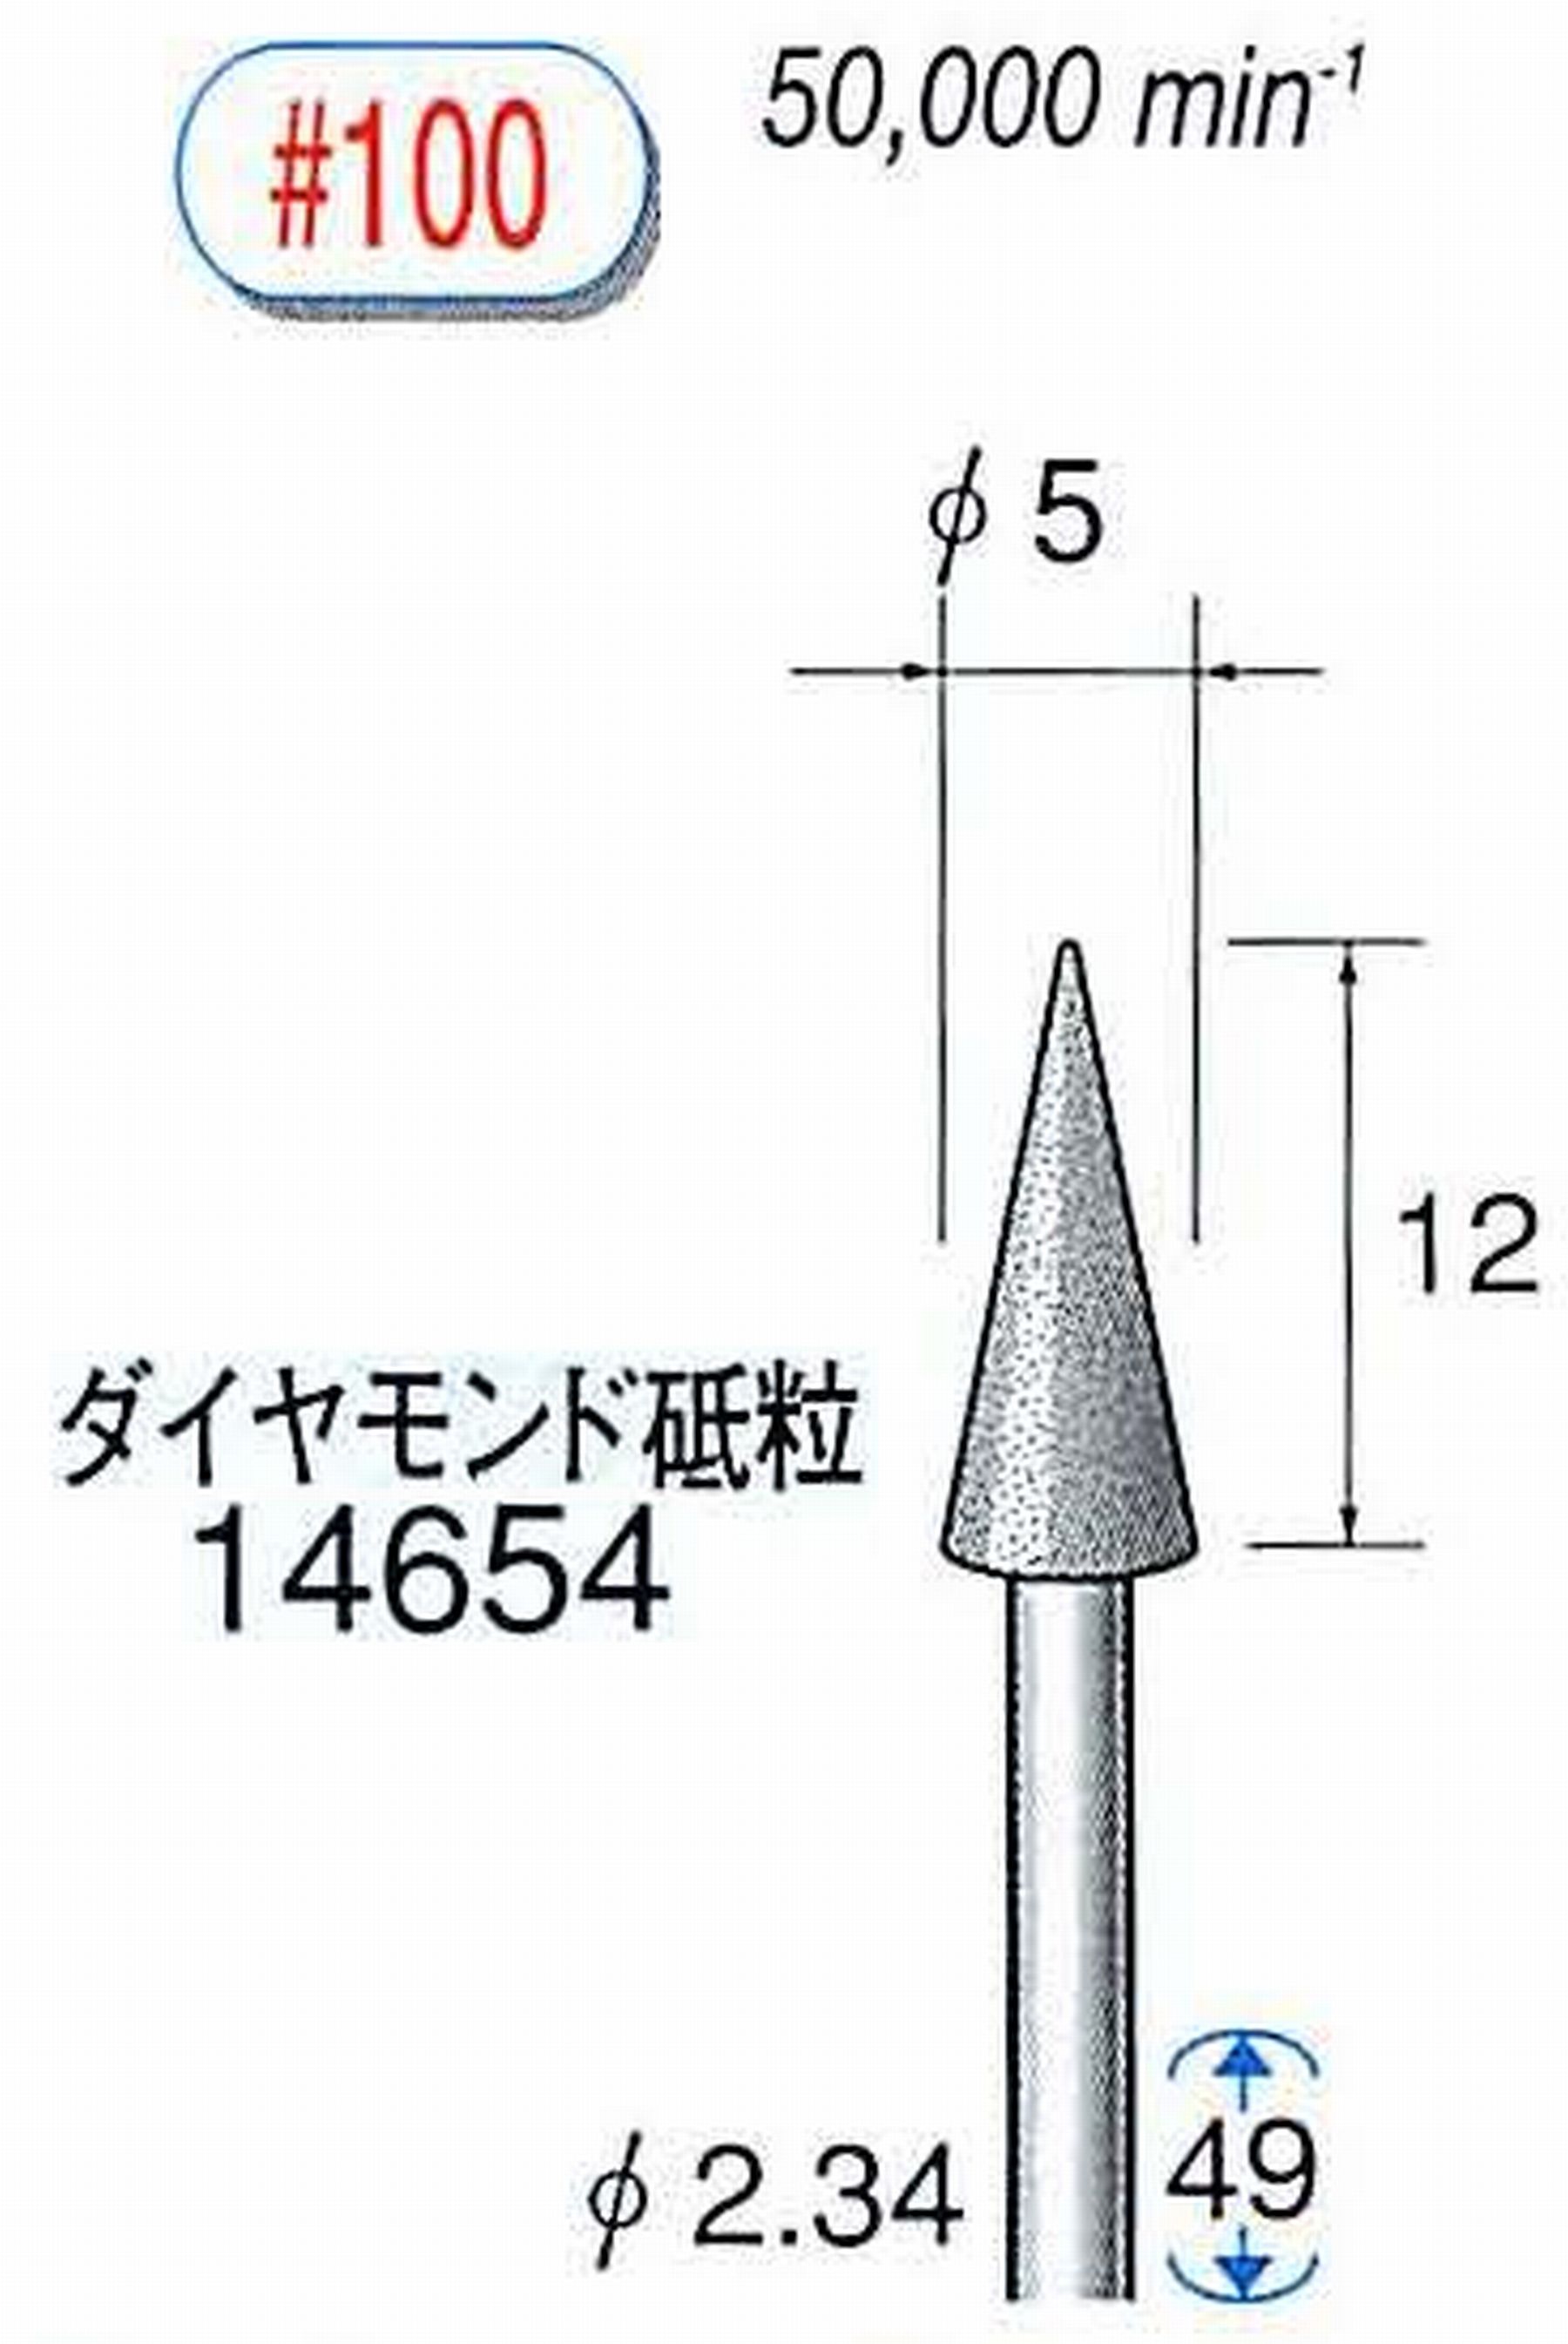 ナカニシ/NAKANISHI ダイヤモンドバー メタルボンドタイプ ダイヤモンド砥粒 軸径(シャンク)φ2.34mm 14654